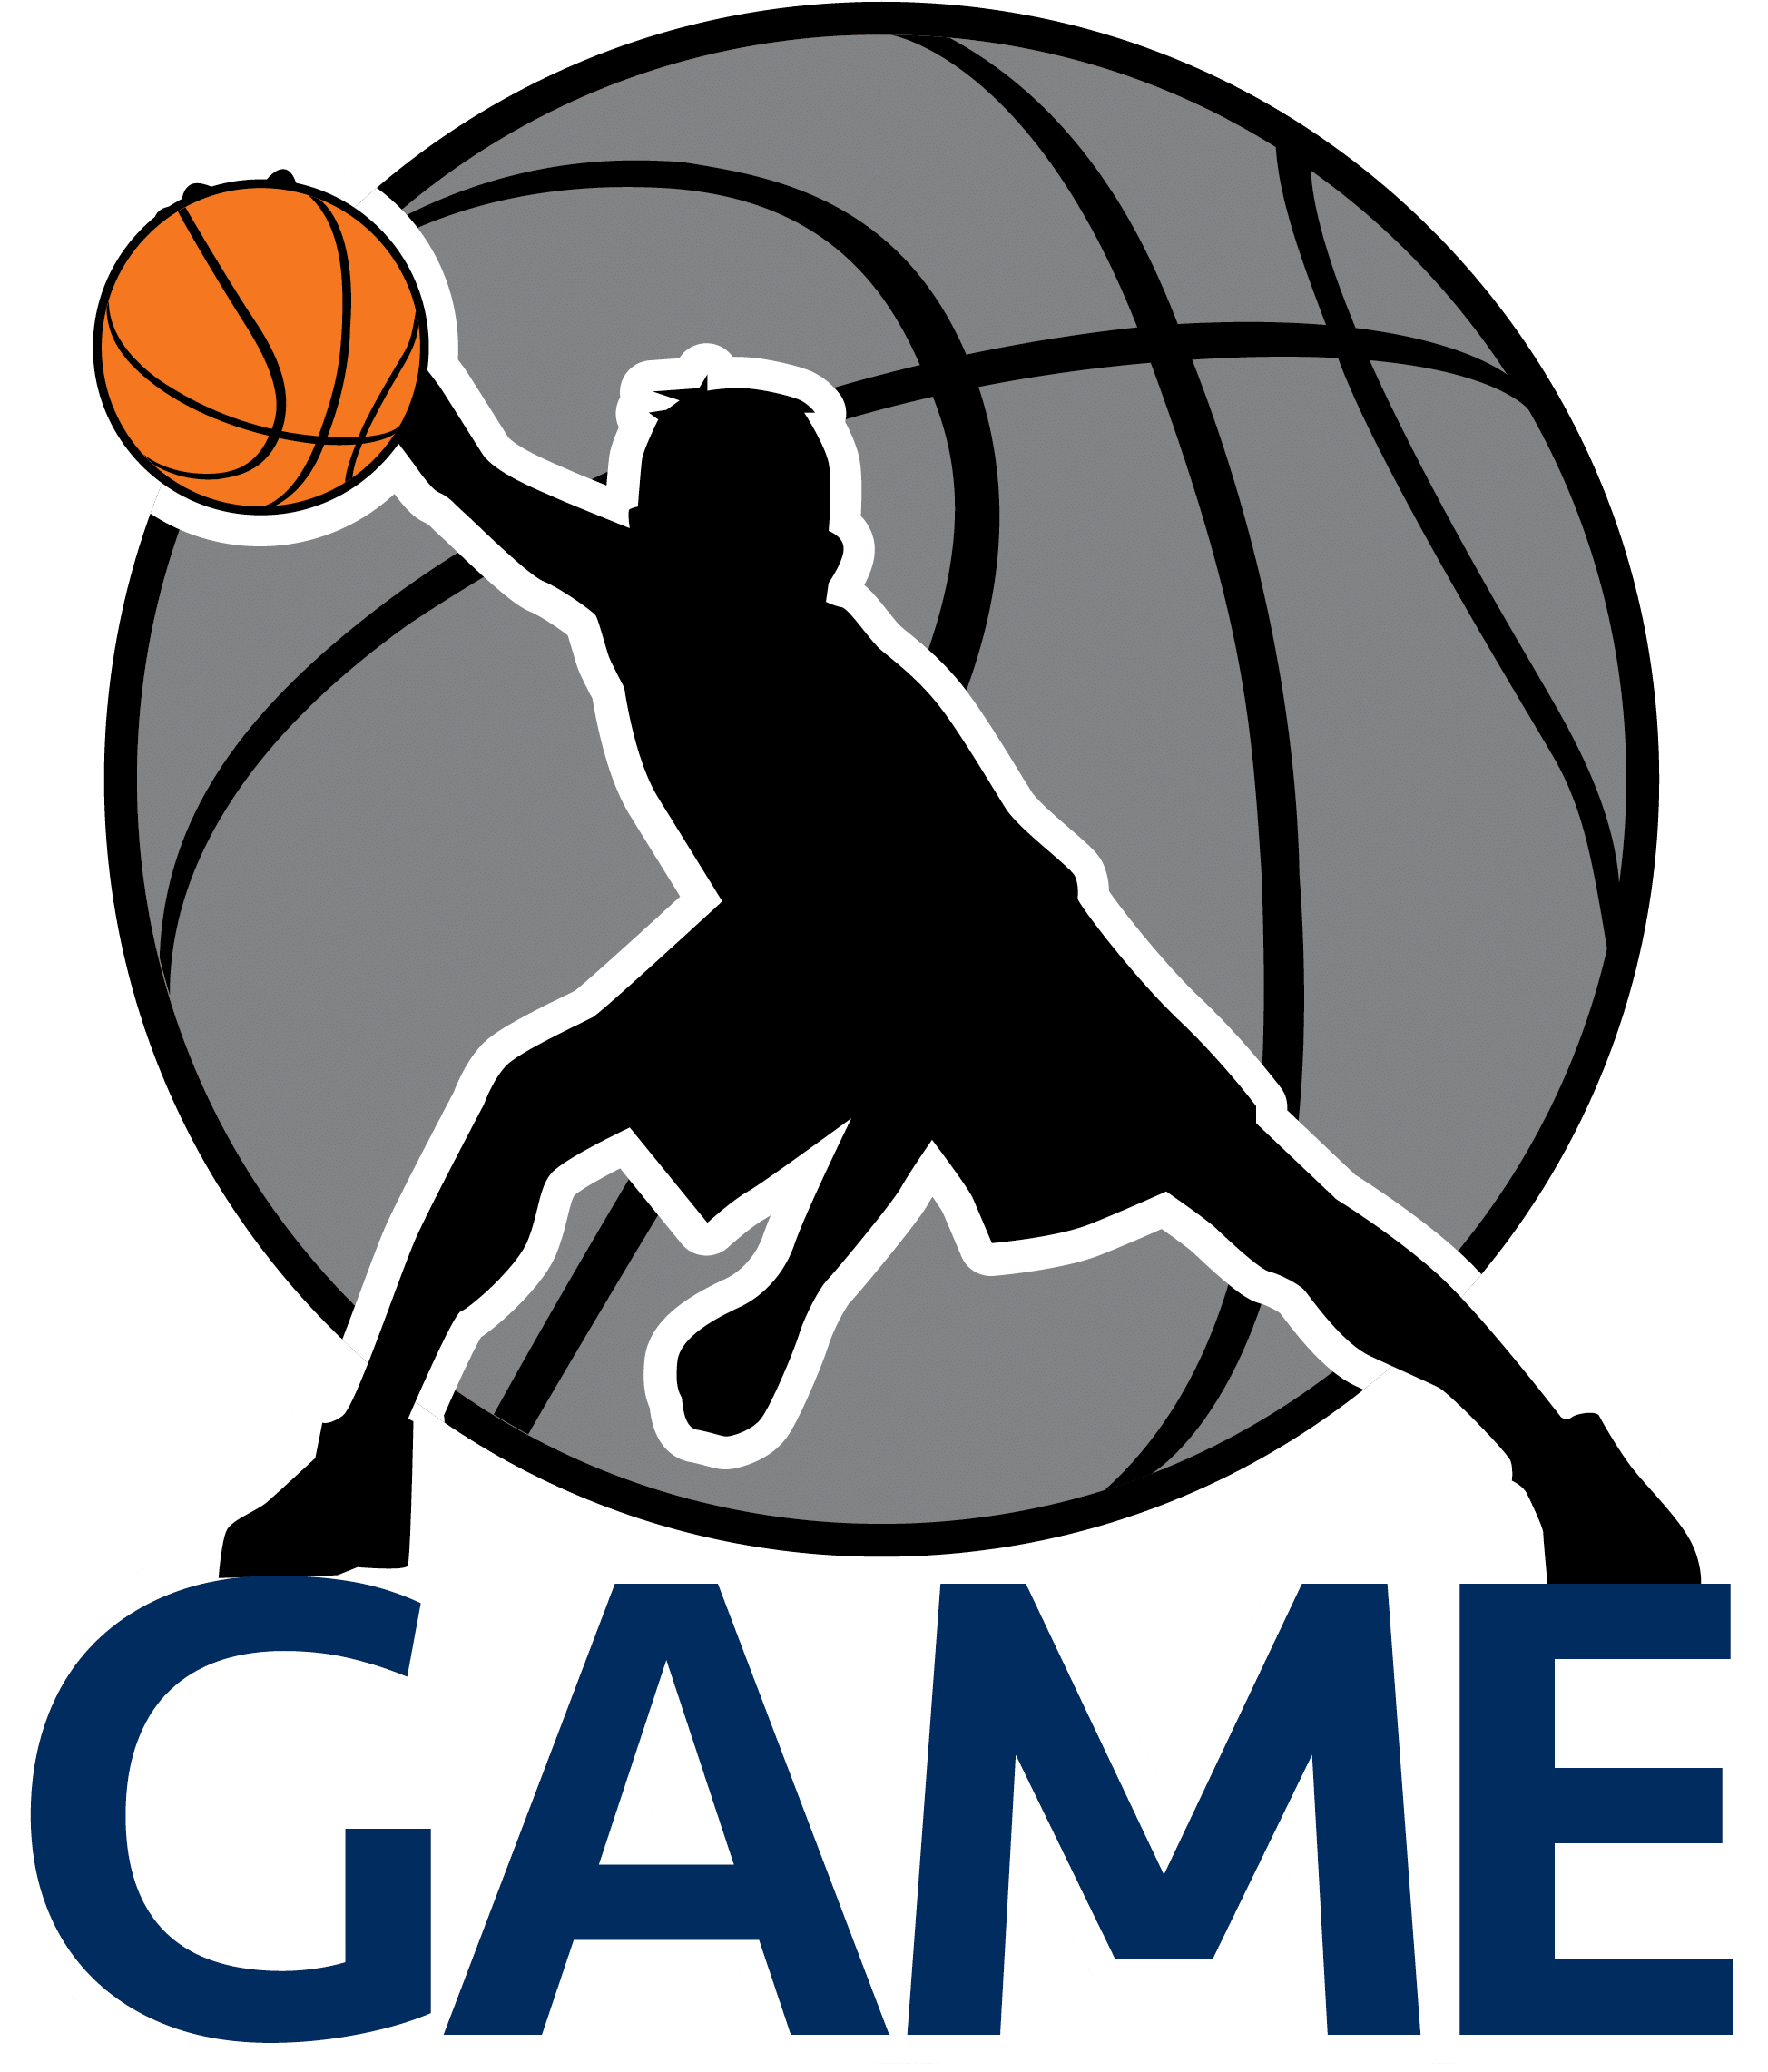 Logotipo da equipe do basquetebol Imagem de alta qualidade do PNG